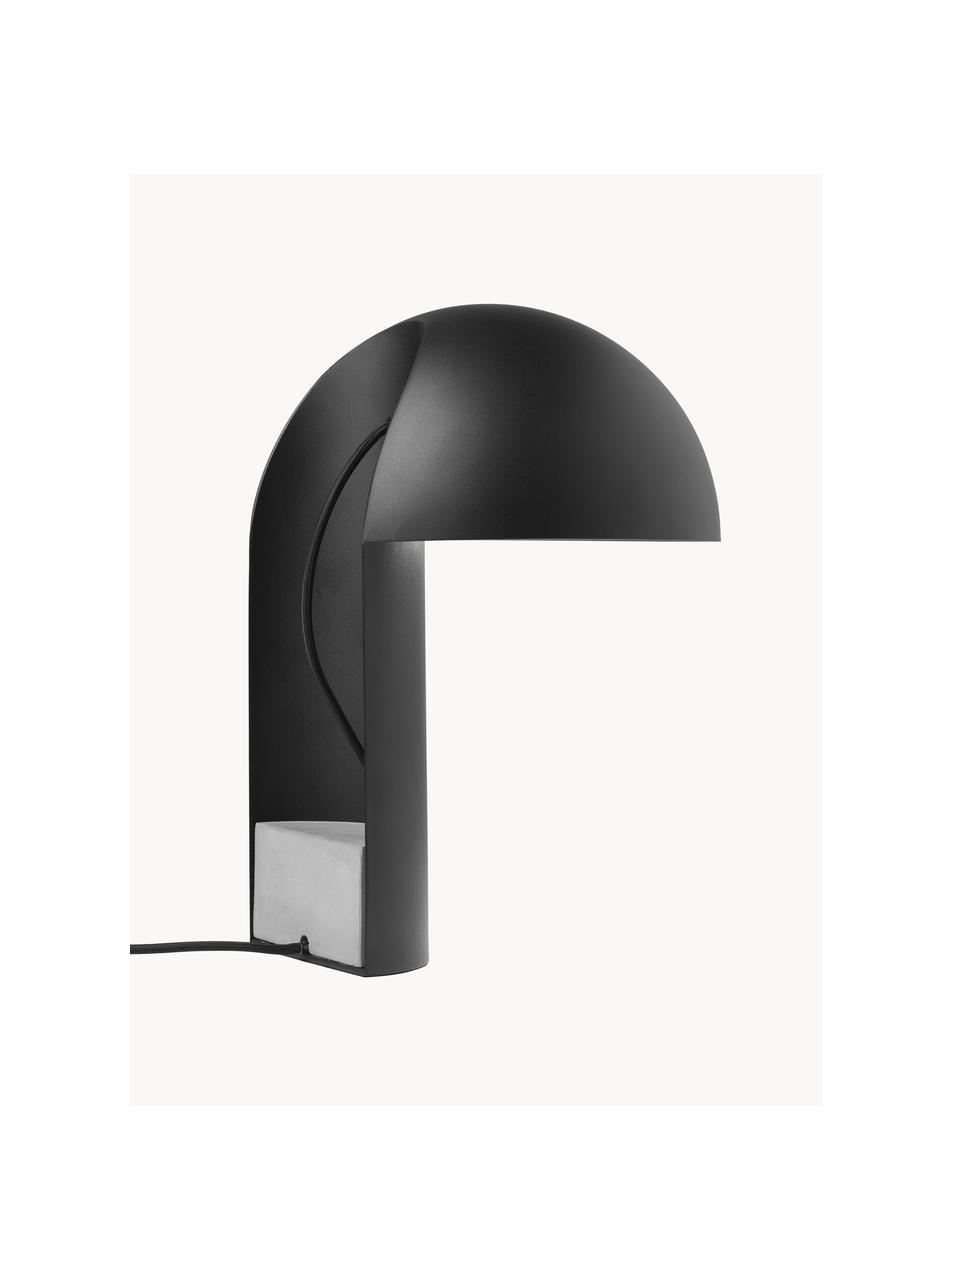 Lampada da tavolo di design Leery, Lampada: acciaio rivestito, Nero, Ø 28 x Alt. 40 cm